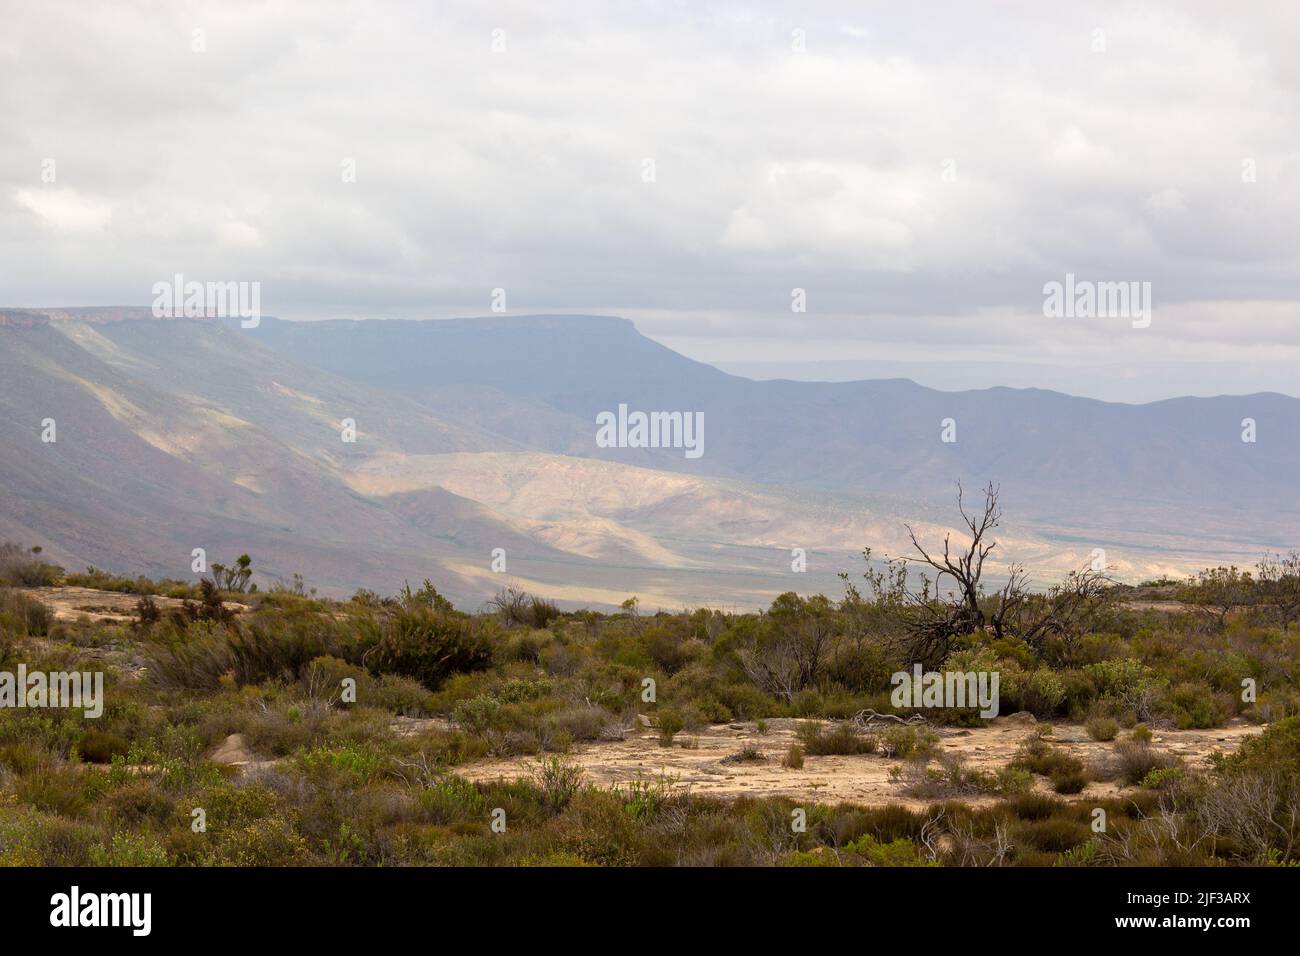 Panorama en la Reserva Natural de Oorlogskloof con un árbol en primer plano y montañas en el fondo cerca de Nieuwoudtville, Cabo del Norte Foto de stock